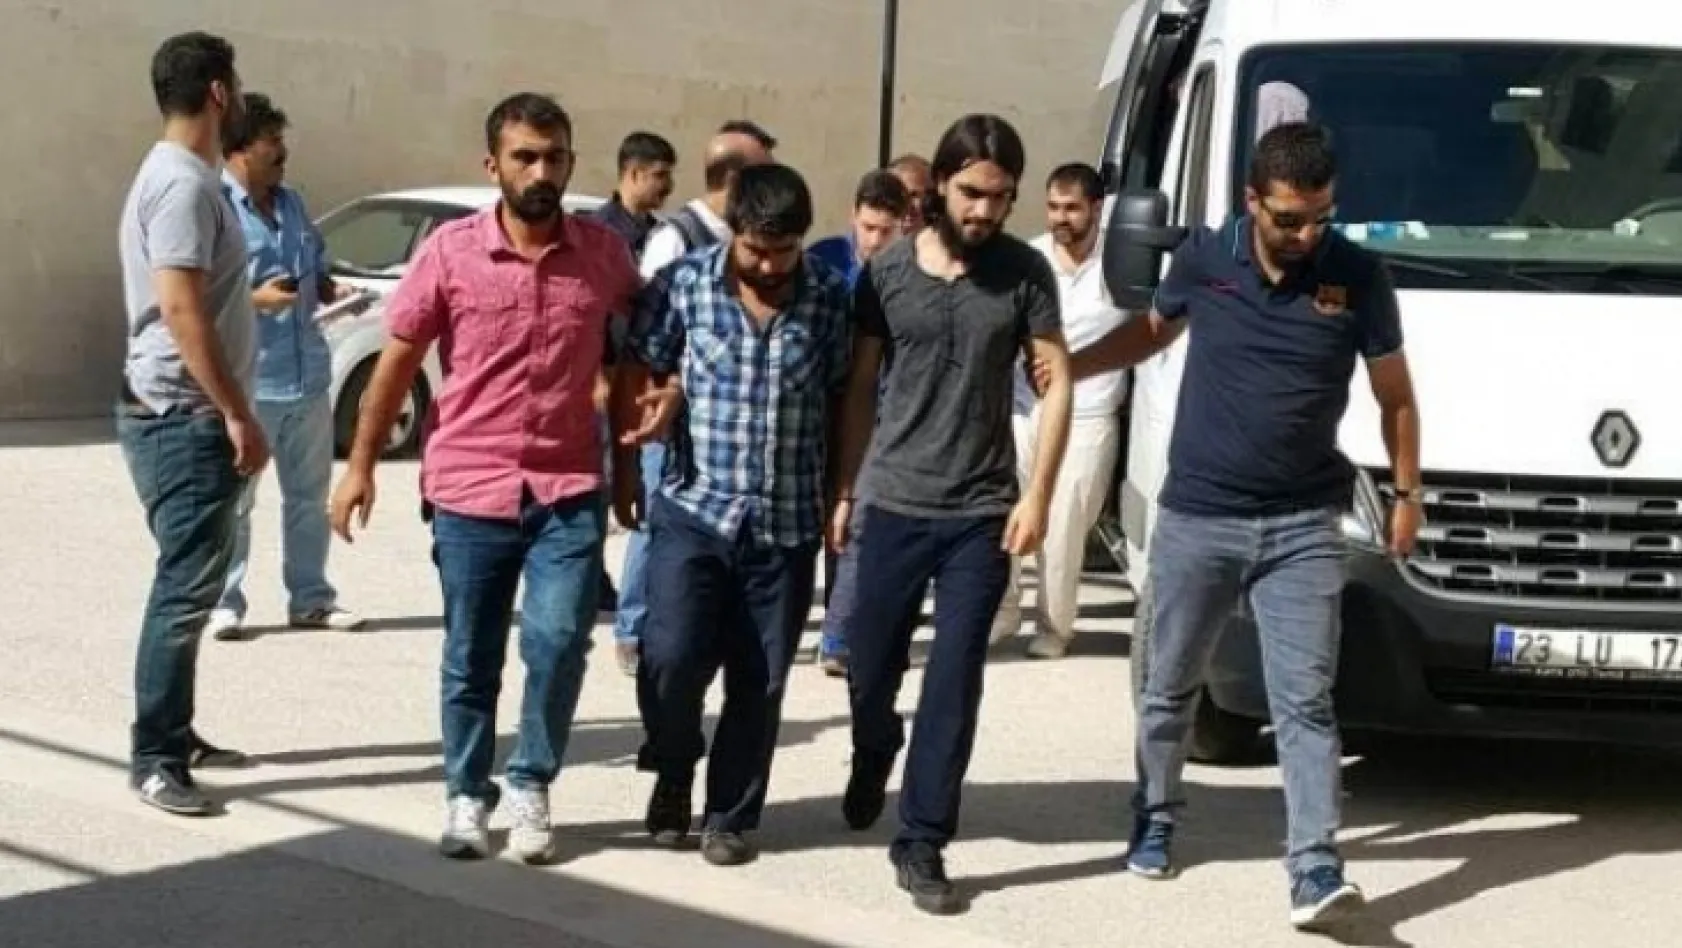 10 IŞİD'li tutuklandı